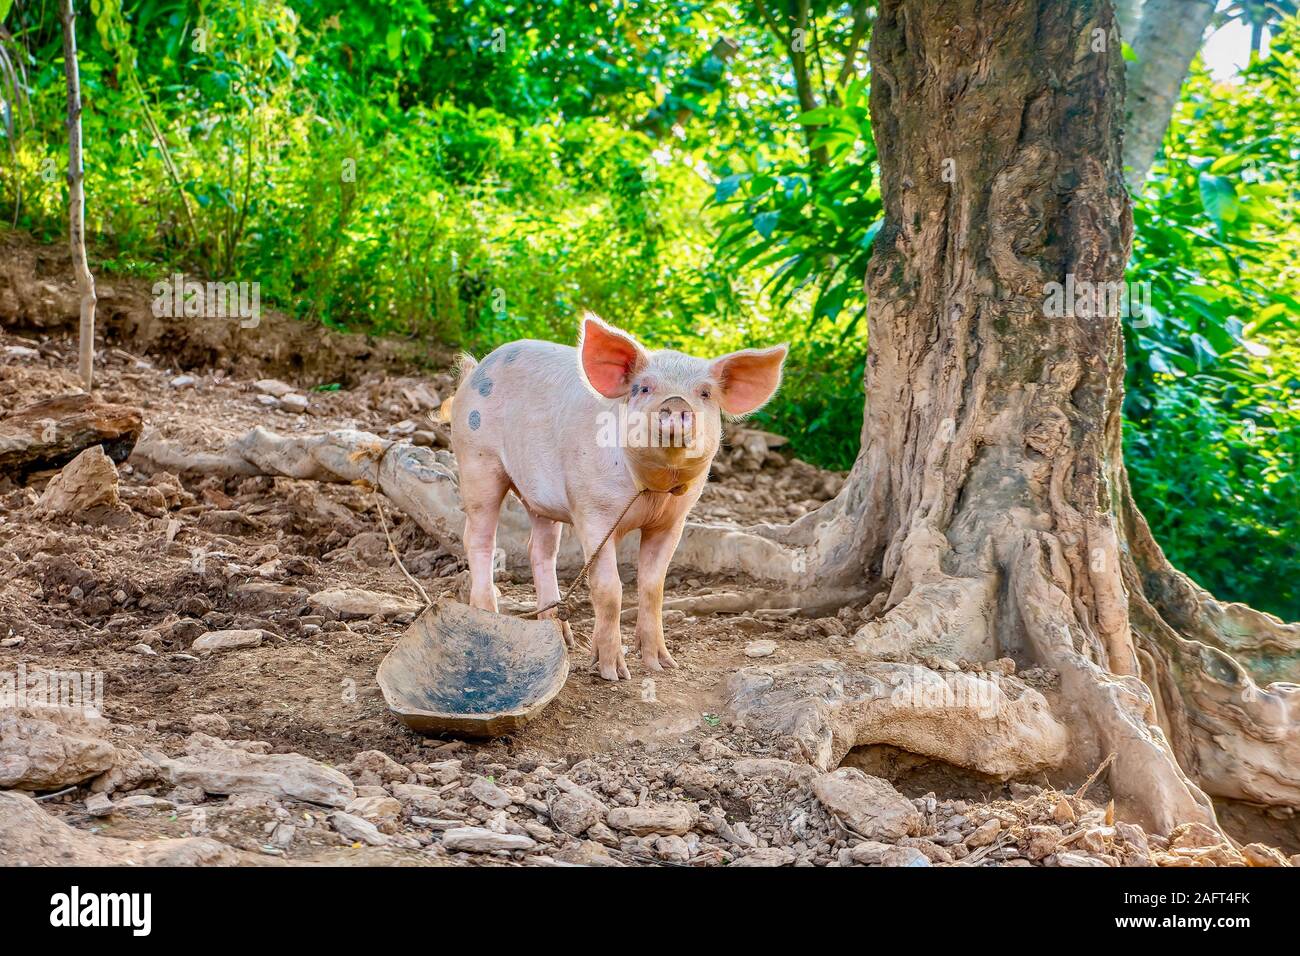 Eine gesunde junge Schwein warten auf einer Insel auf den Philippinen, wo die Schweine gefüttert zu werden ist ein beliebter Small Business für ländliche Familien. Stockfoto